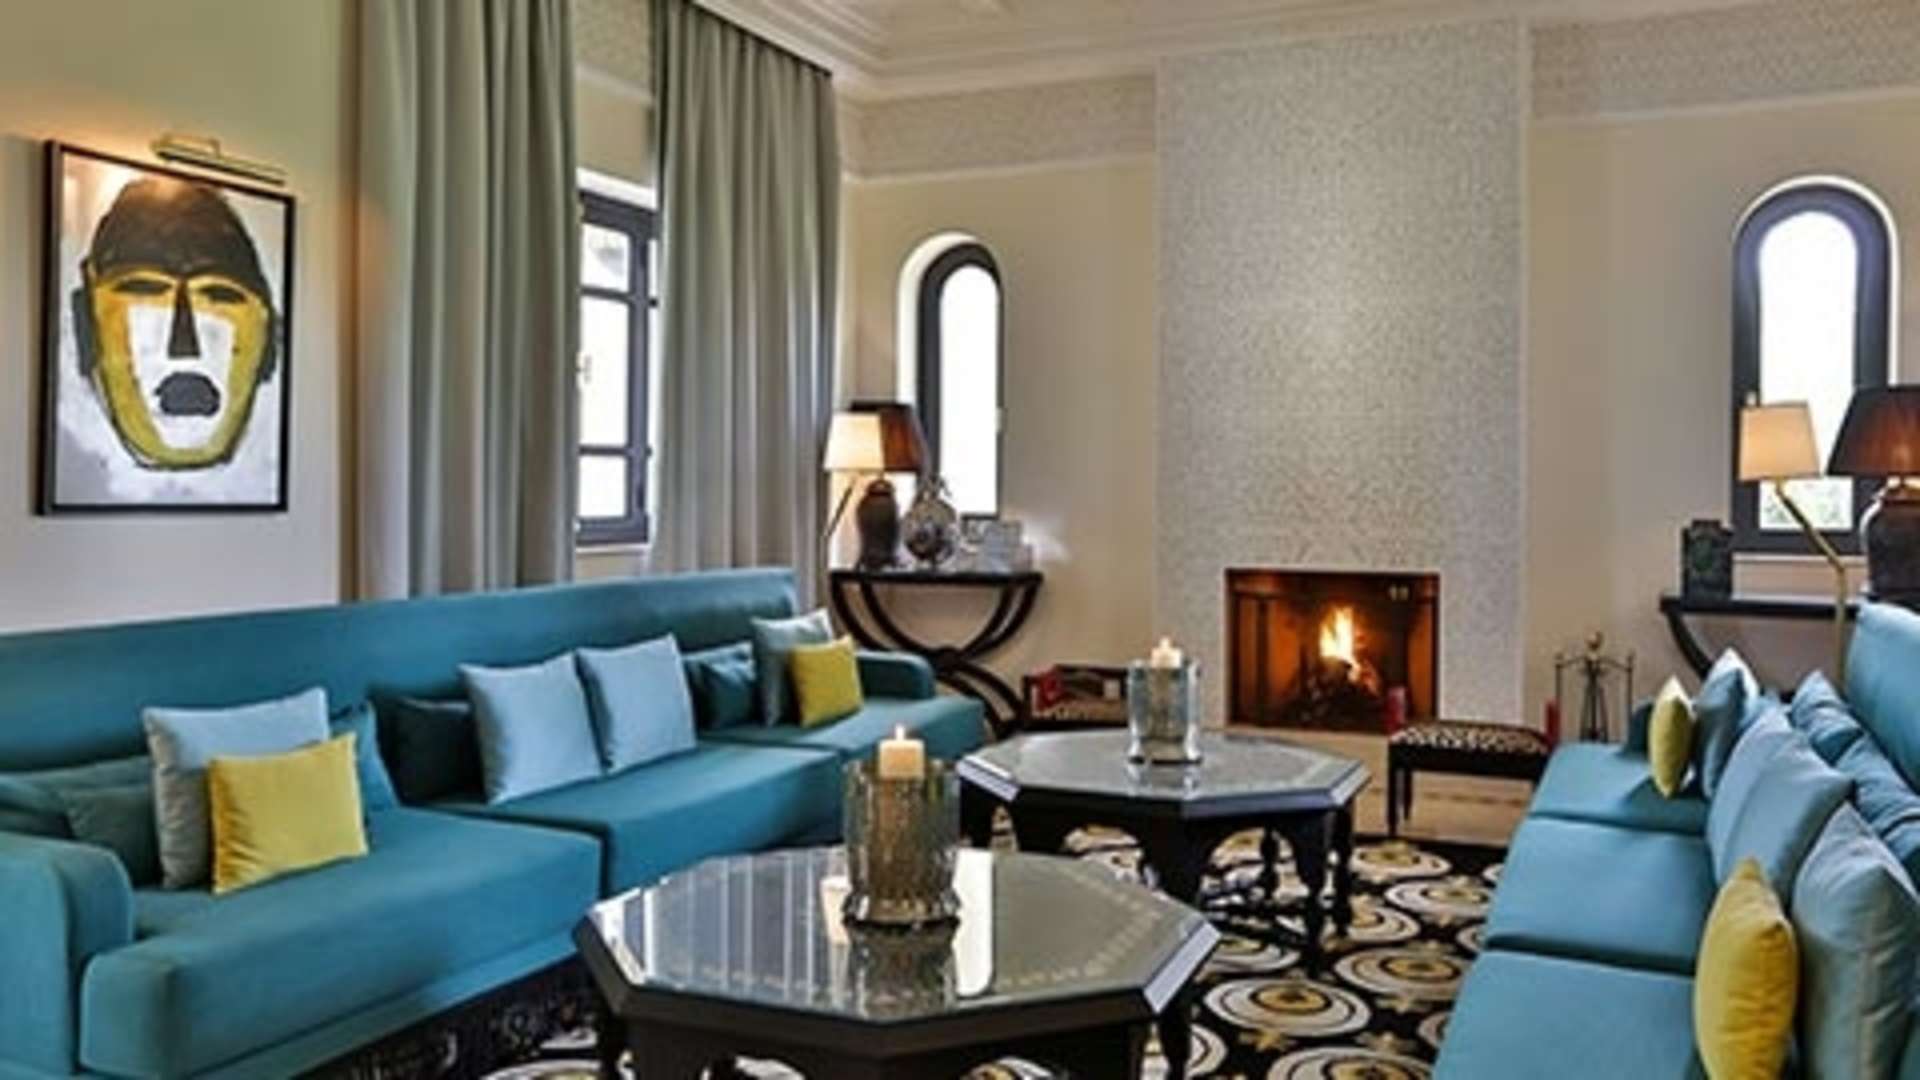 Location de vacances,Villa,Magnifique demeure privée et sécurisée de luxe dans la Palmeraie 6 suites avec services d’exception.,Marrakech,Bab Atlas